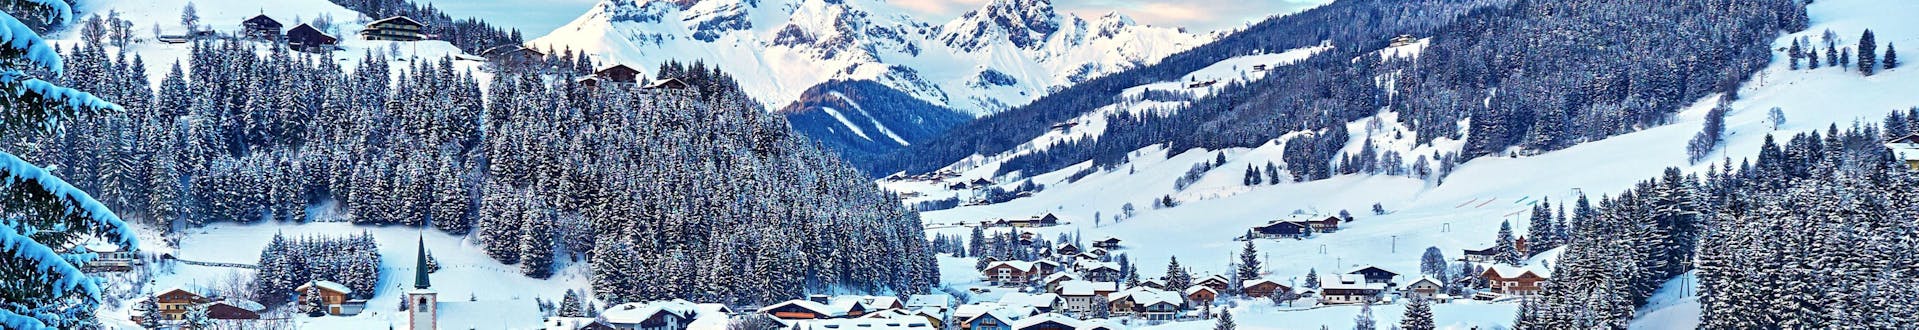 Ville de Filzmoos, en Autriche, près des pistes où vous pouvez réserver des leçons de ski.